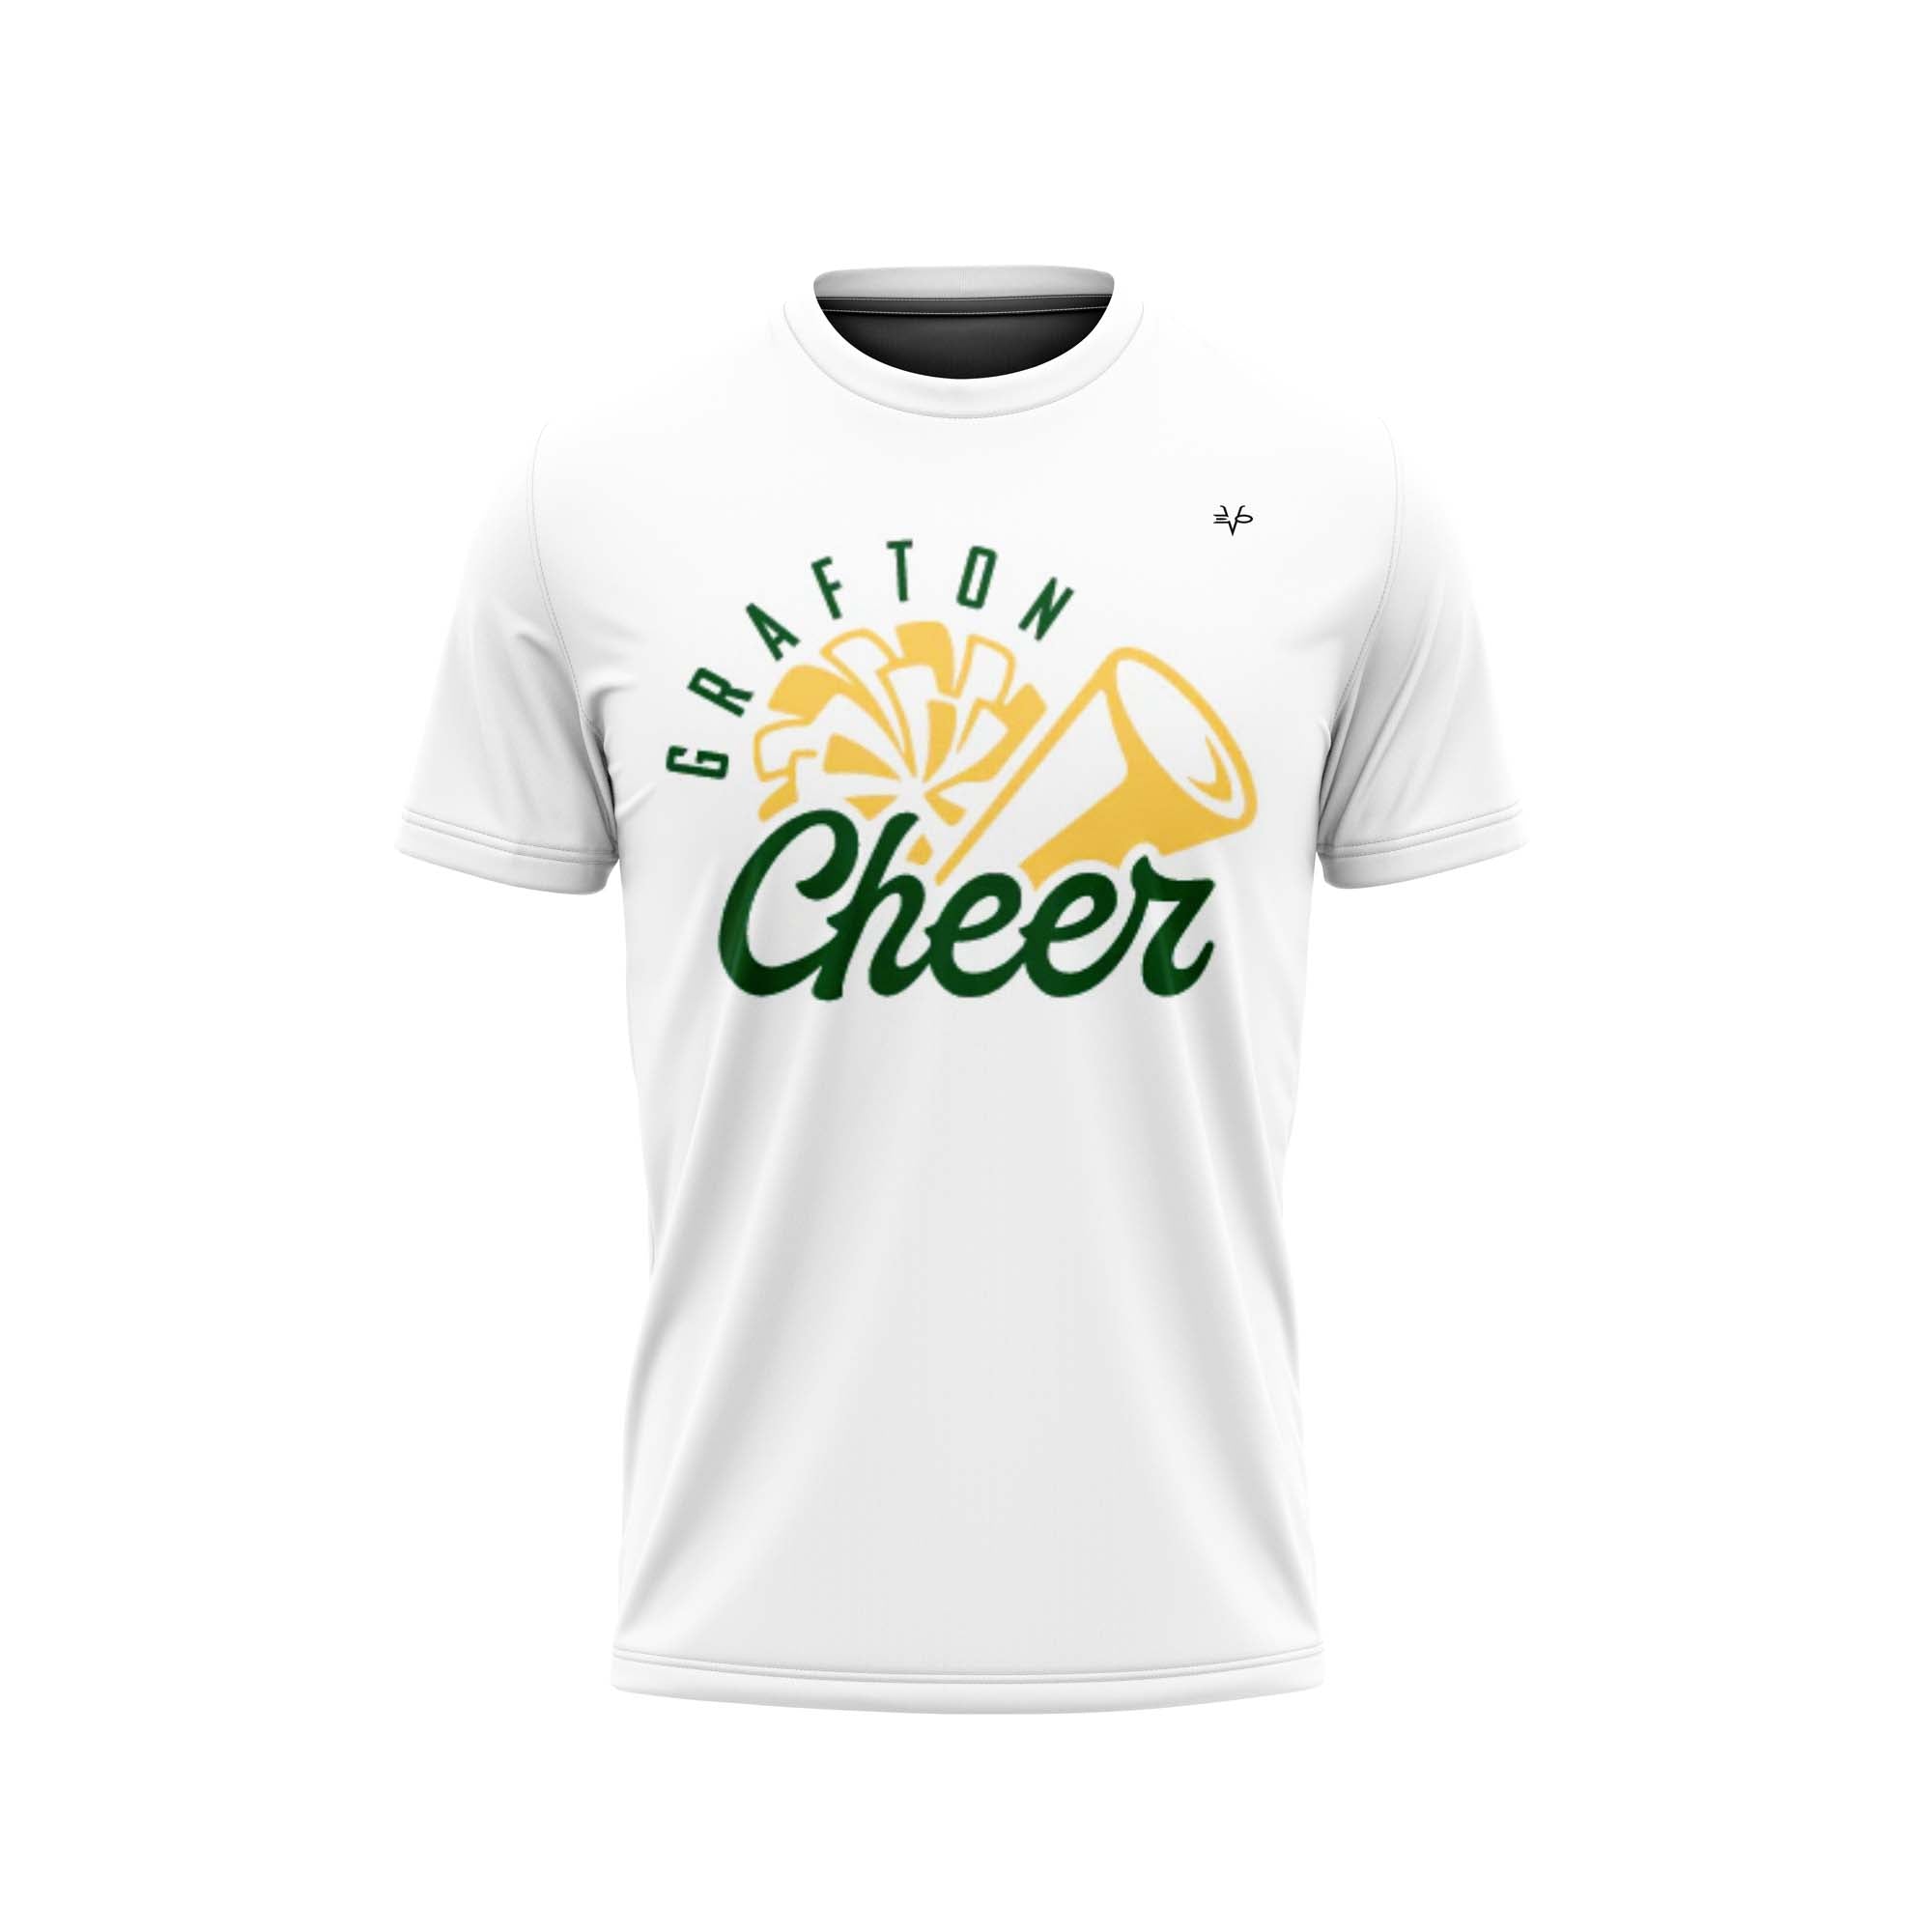 GRAFTON Cheer Semi Sub Shirt